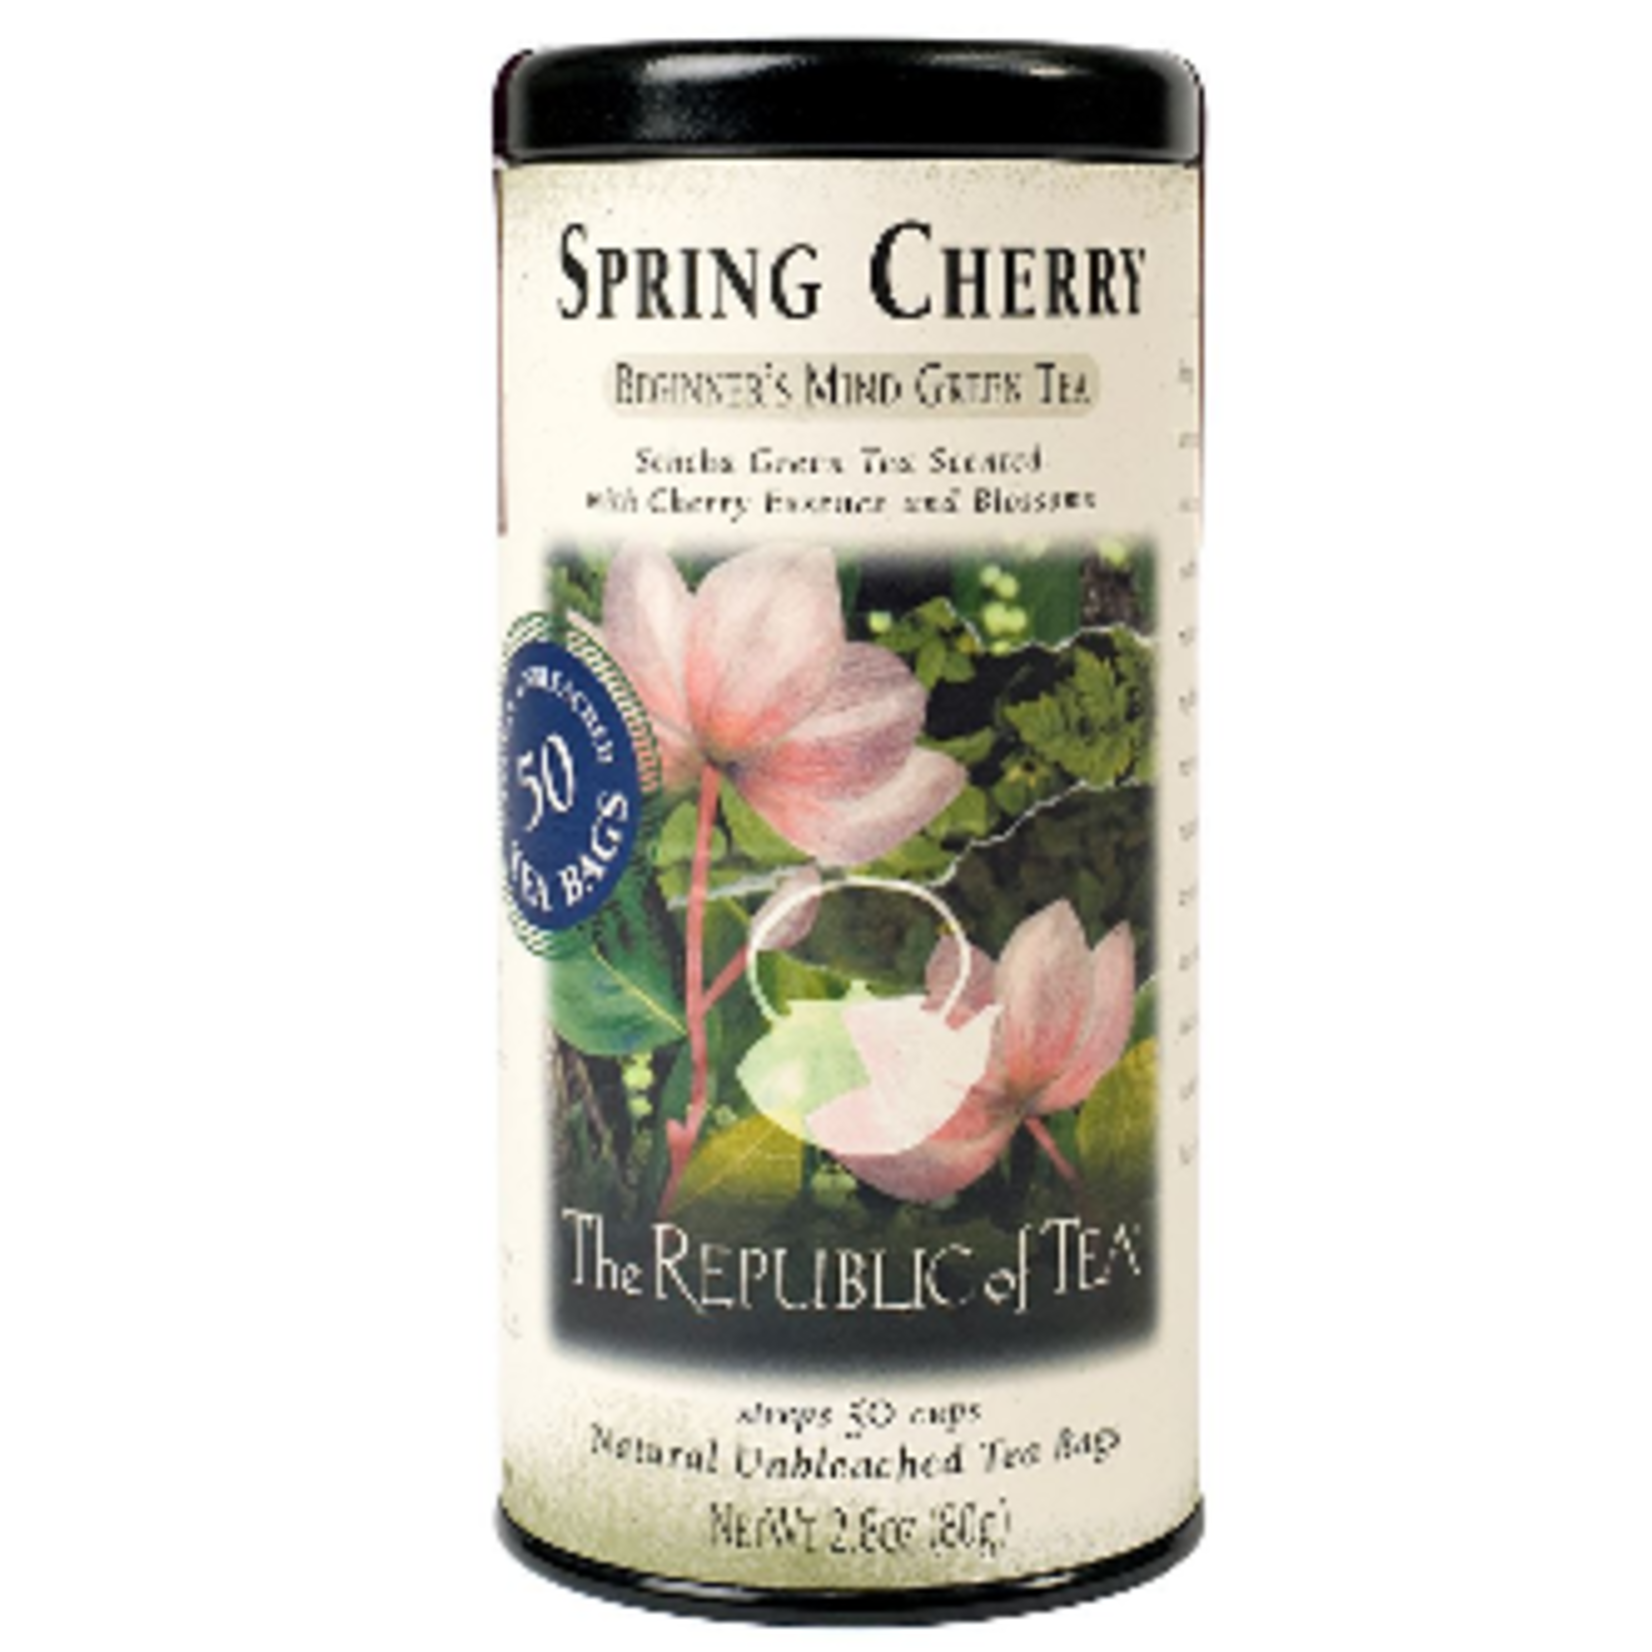 The Republic of Tea Spring Cherry Green Tea 50 Bag Tin